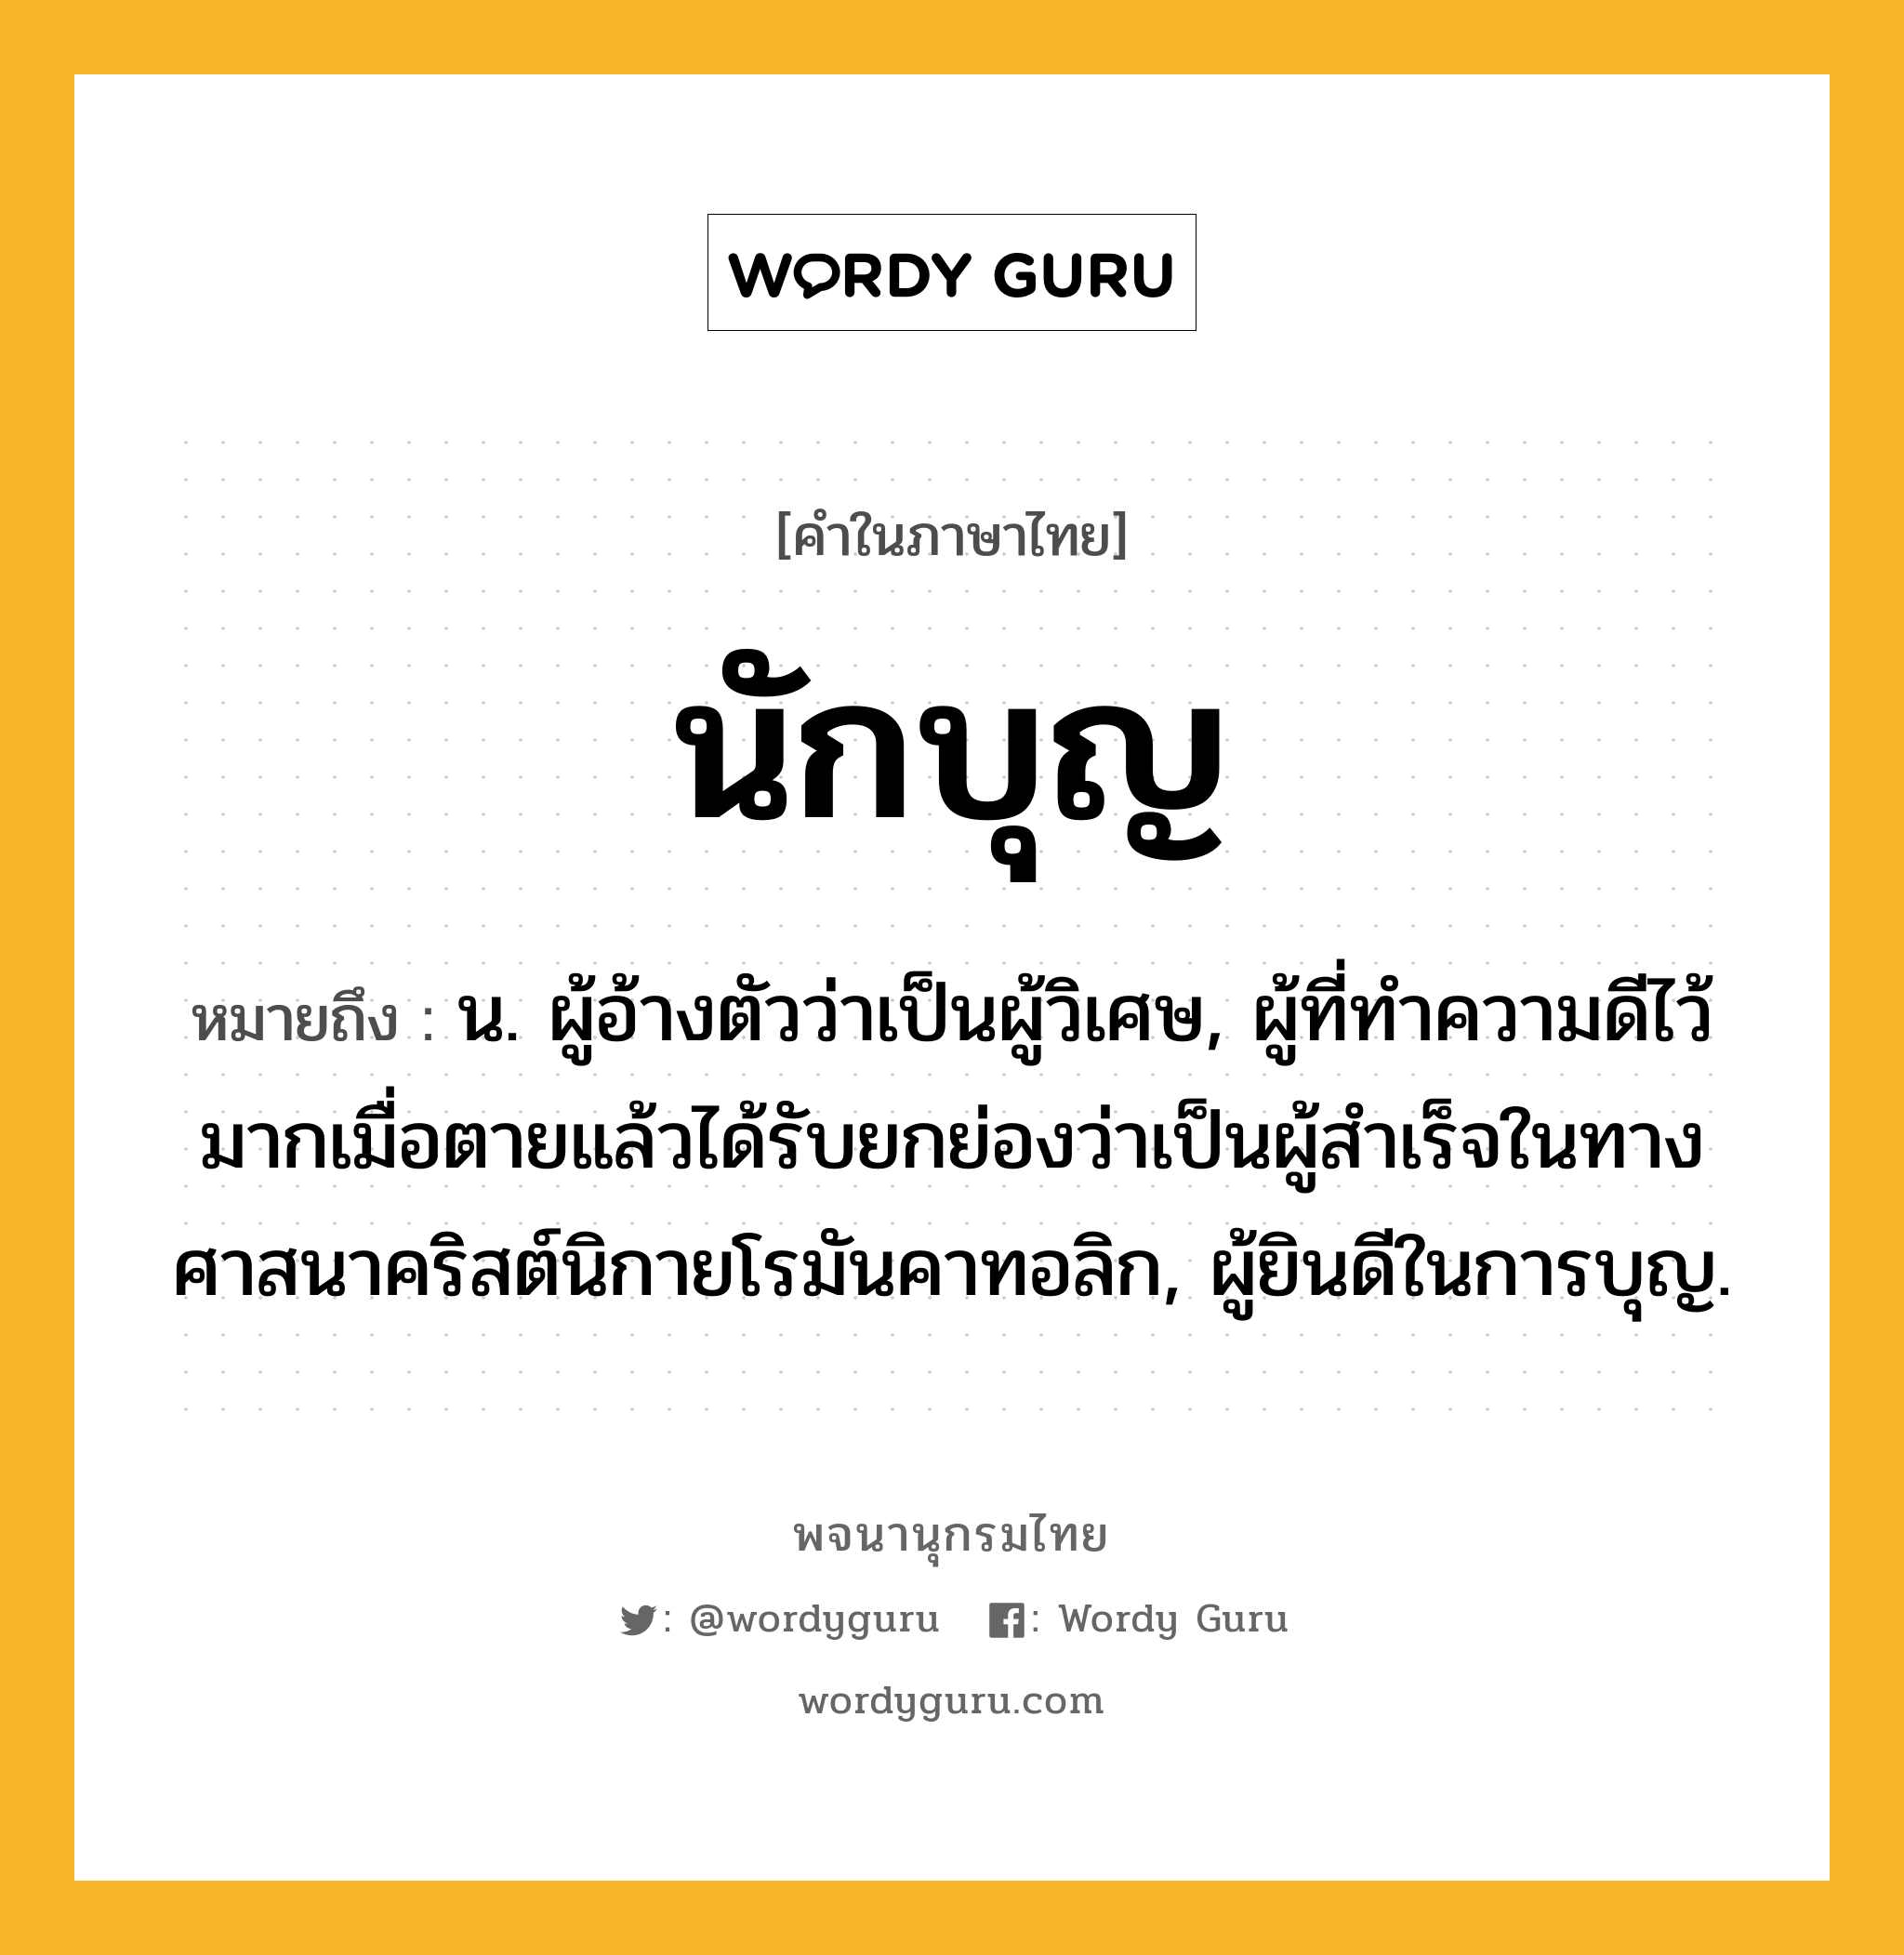 นักบุญ ความหมาย หมายถึงอะไร?, คำในภาษาไทย นักบุญ หมายถึง น. ผู้อ้างตัวว่าเป็นผู้วิเศษ, ผู้ที่ทําความดีไว้มากเมื่อตายแล้วได้รับยกย่องว่าเป็นผู้สําเร็จในทางศาสนาคริสต์นิกายโรมันคาทอลิก, ผู้ยินดีในการบุญ.